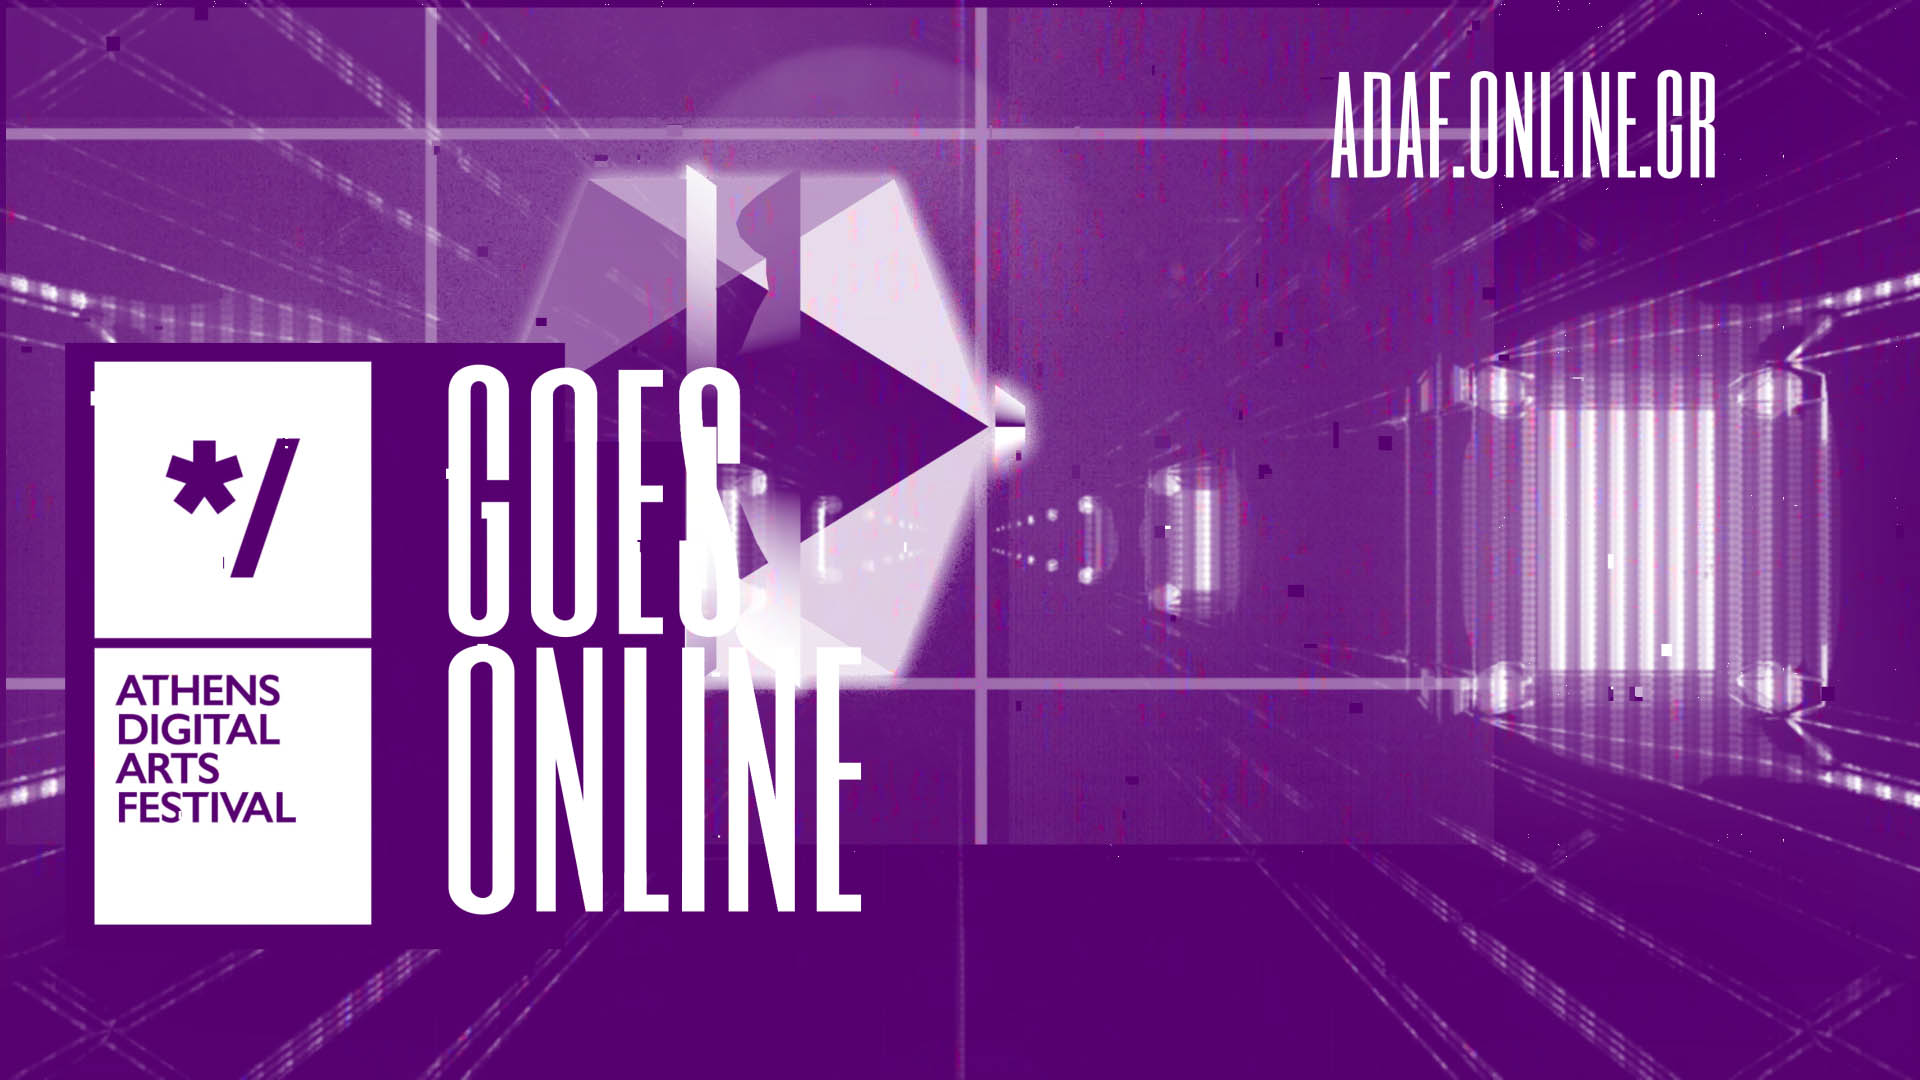 18ο Athens Digital Arts Festival, FutuRetro returns Online  15th September-15th October 2022